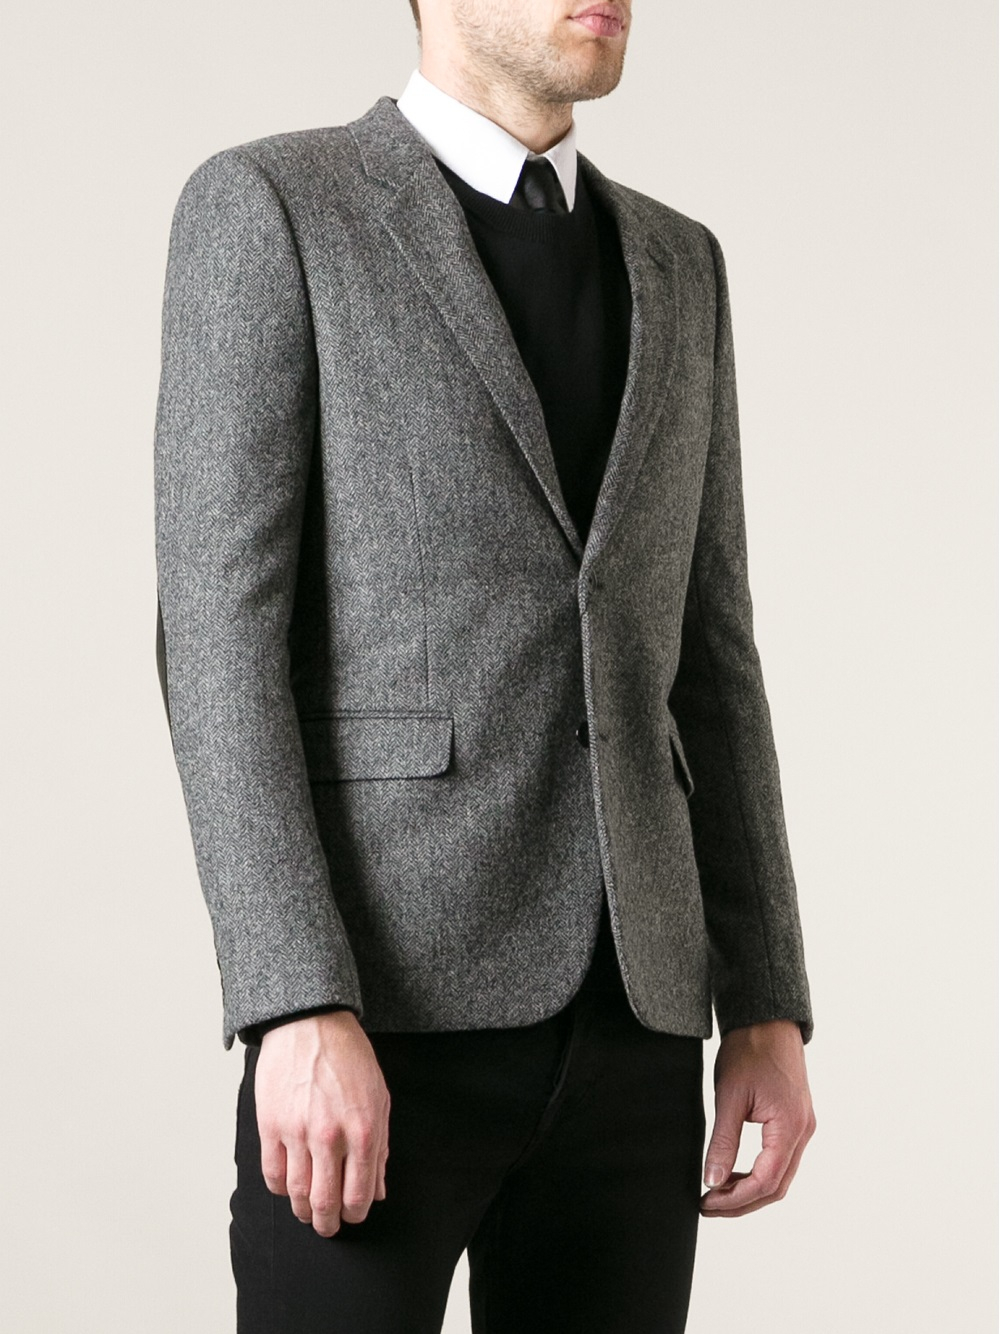 Saint Laurent Herringbone Tweed Blazer in Gray for Men - Lyst